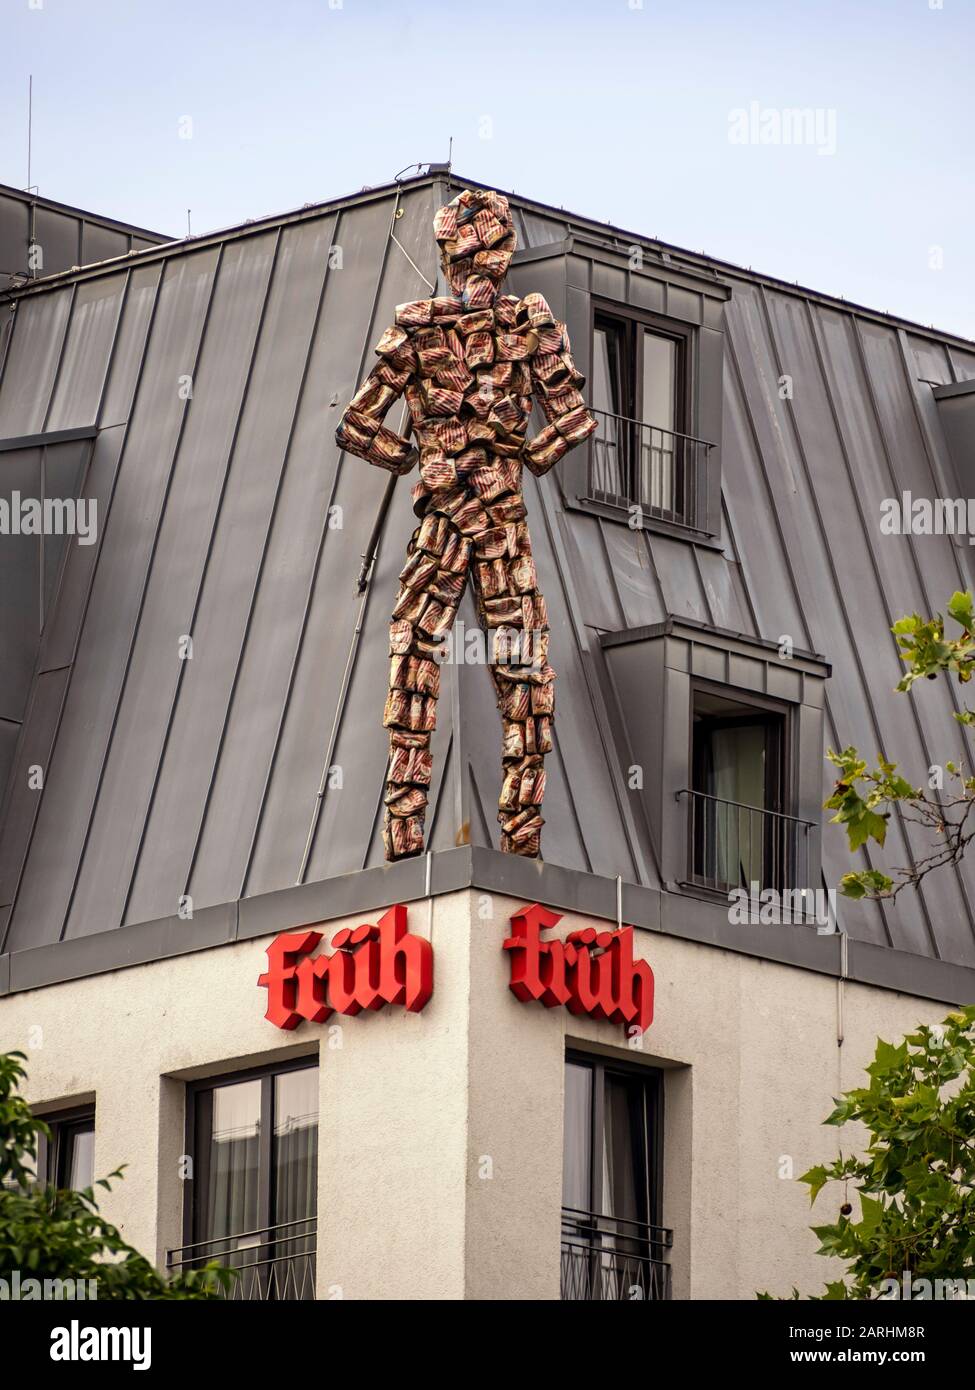 KÖLN, DEUTSCHLAND - 05. JULI 2019: Die Skulptur Fruehman (aus Bierdosen) auf dem Dach des Eden Hotel Frueh am Dom Stockfoto